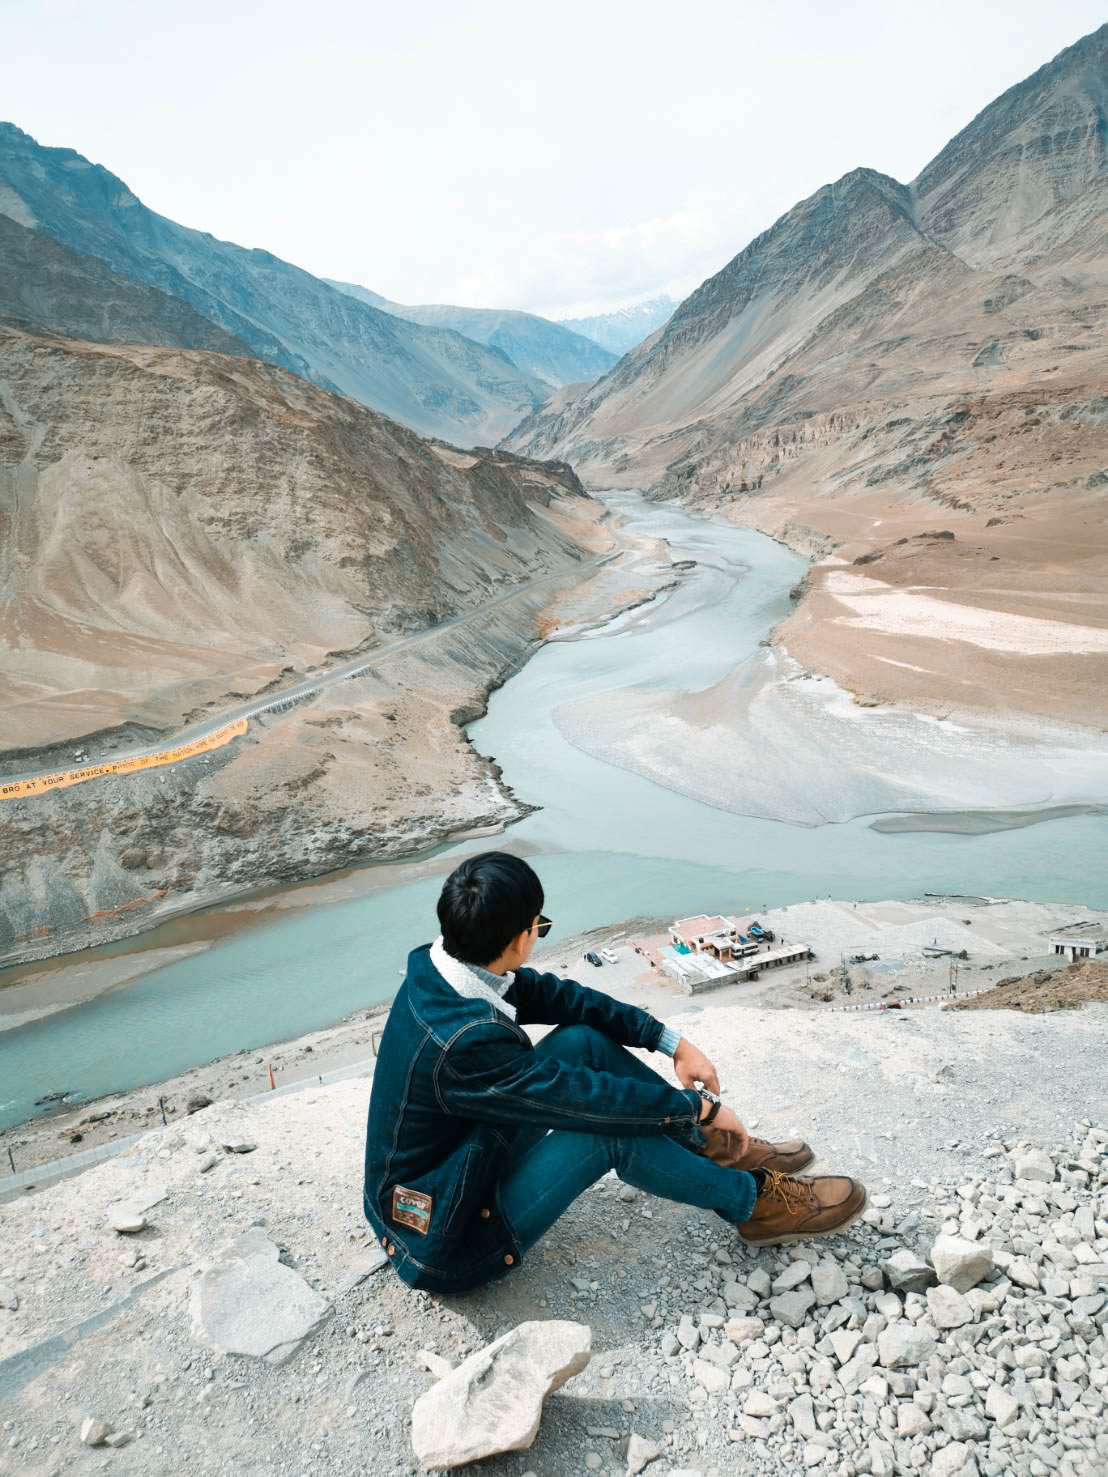 จุดตัดแม่น้ำสินธุและซันสการ ทัวร์เลห์ ลาดักห์ เที่ยวเลห์ ลาดักห์ Leh Ladakh Tour leh ladakh